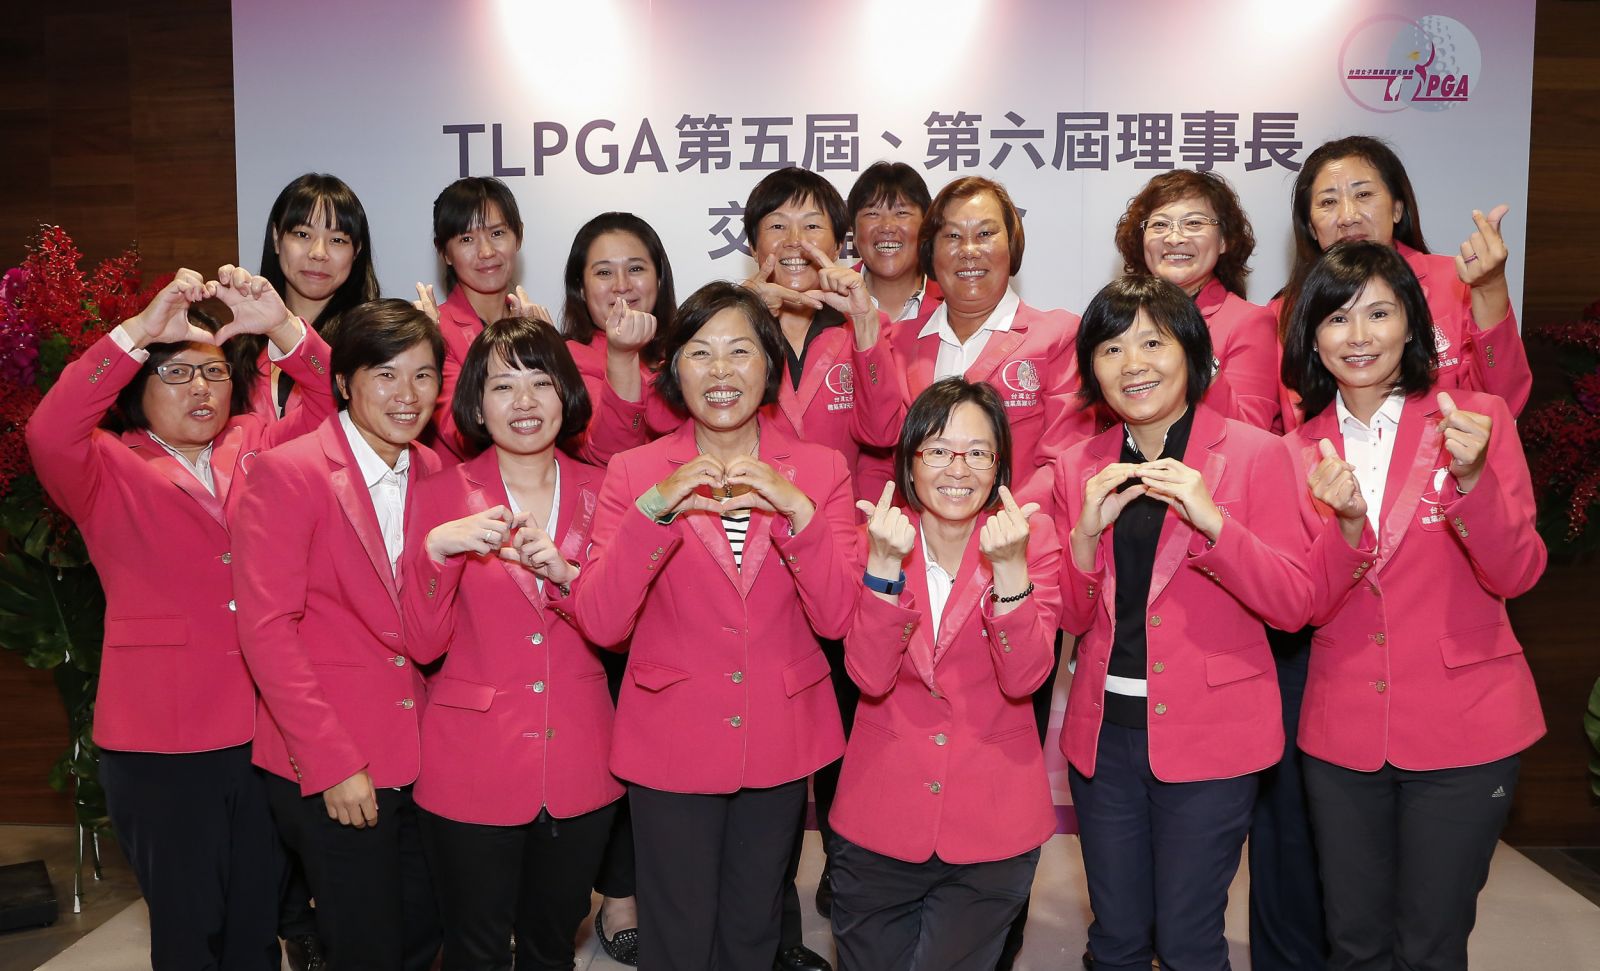 TLPGA新舊工作團隊大合照。